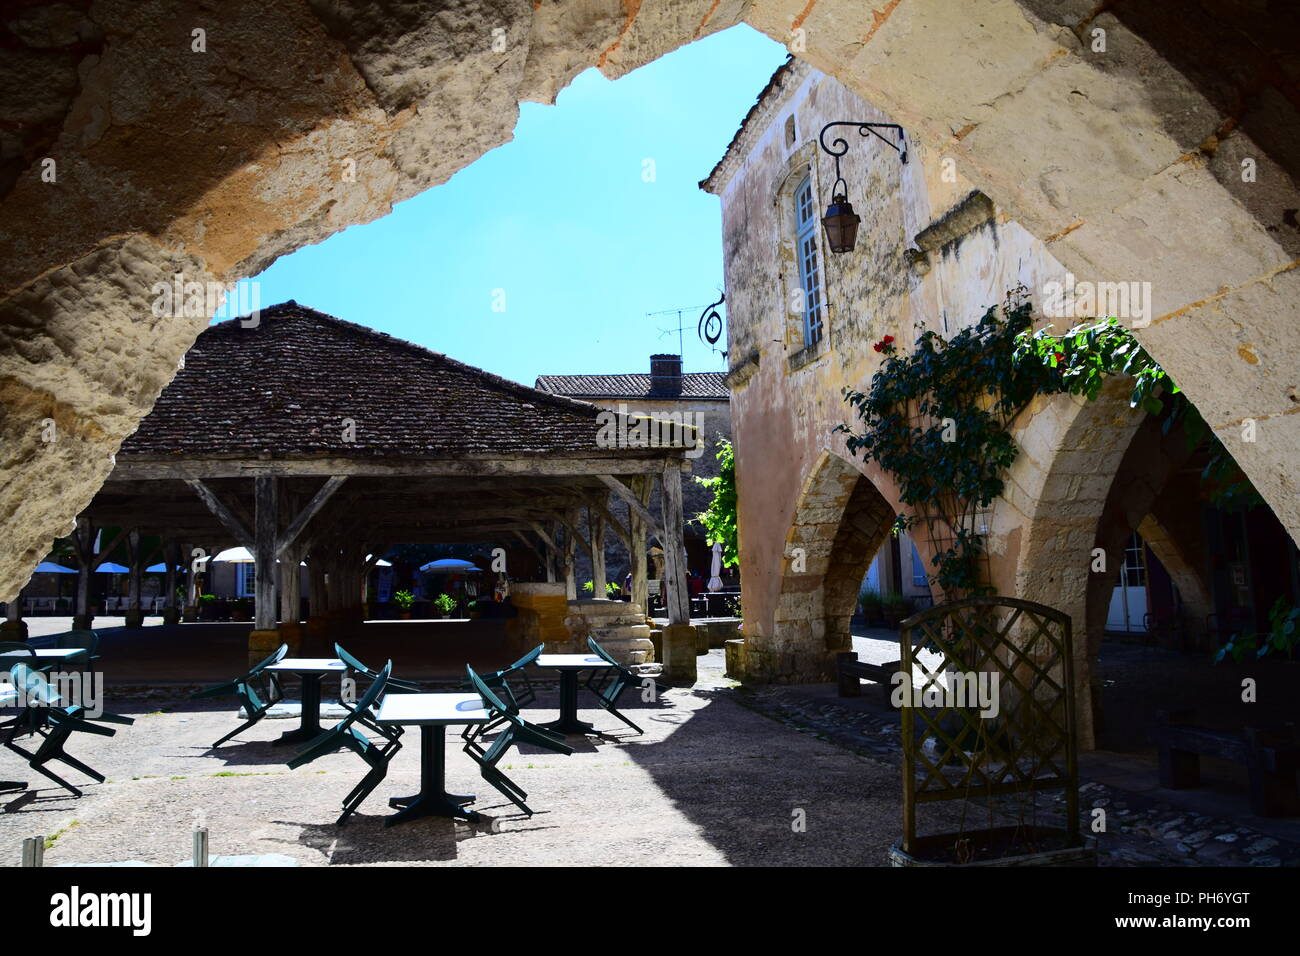 Vues du Centre et des rues de la bastide médiévale de Monpazier village dans la région de la Dordogne Banque D'Images